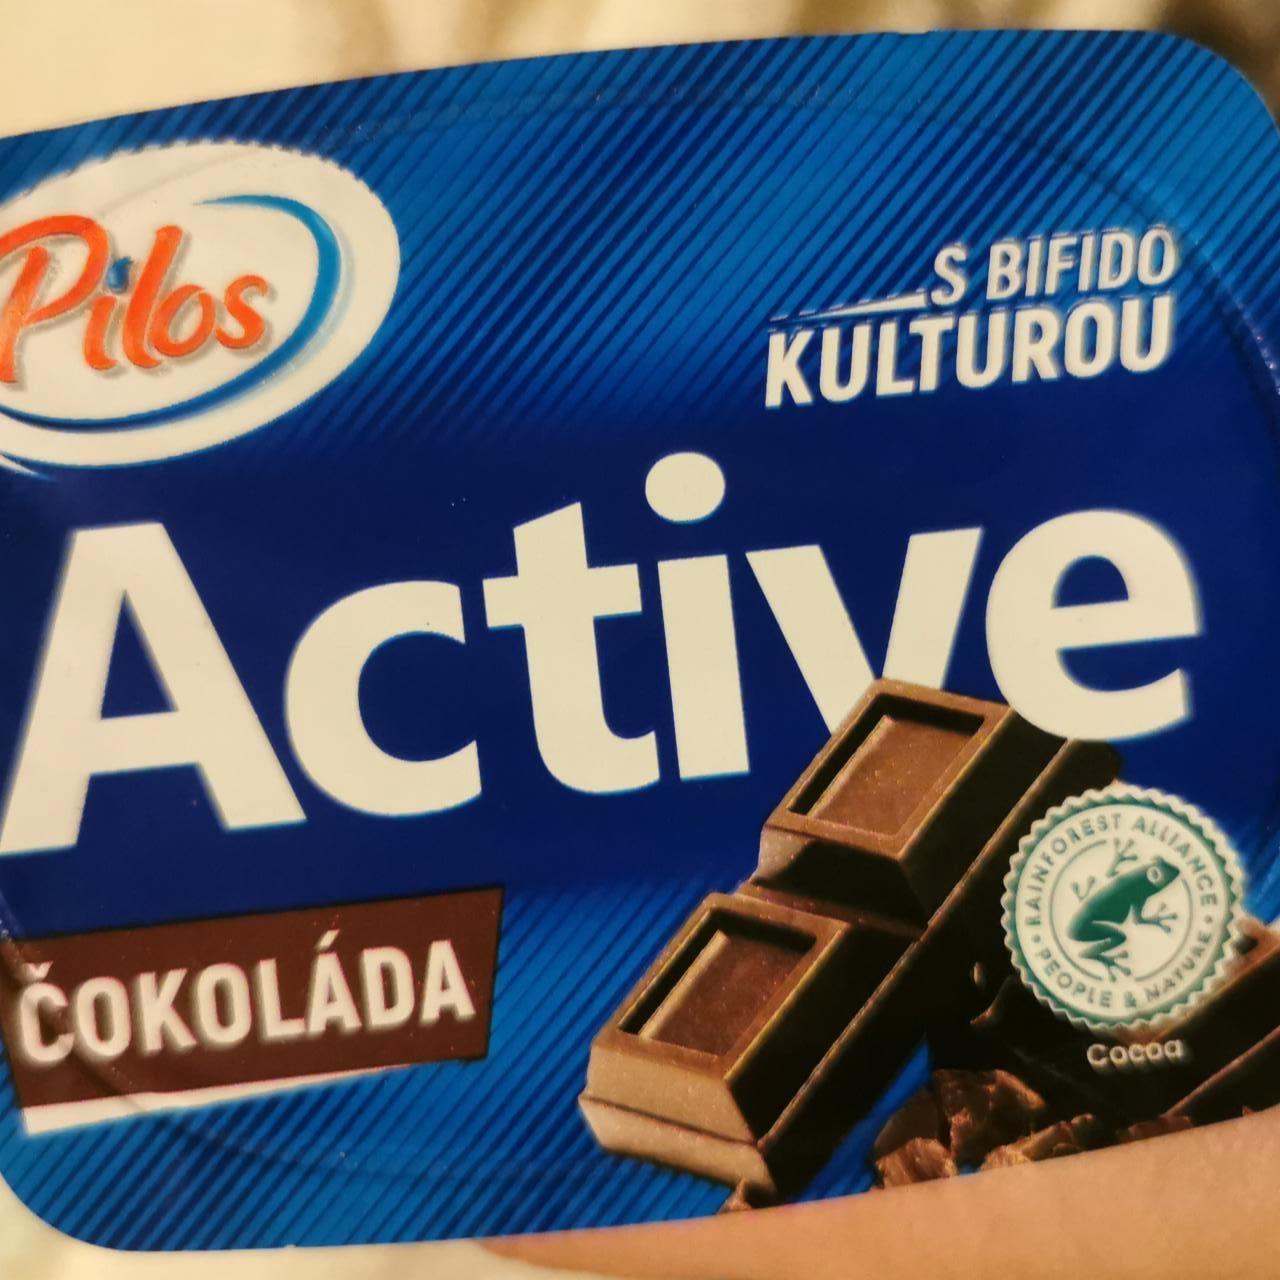 Képek - Active csokis joghurt Pilos